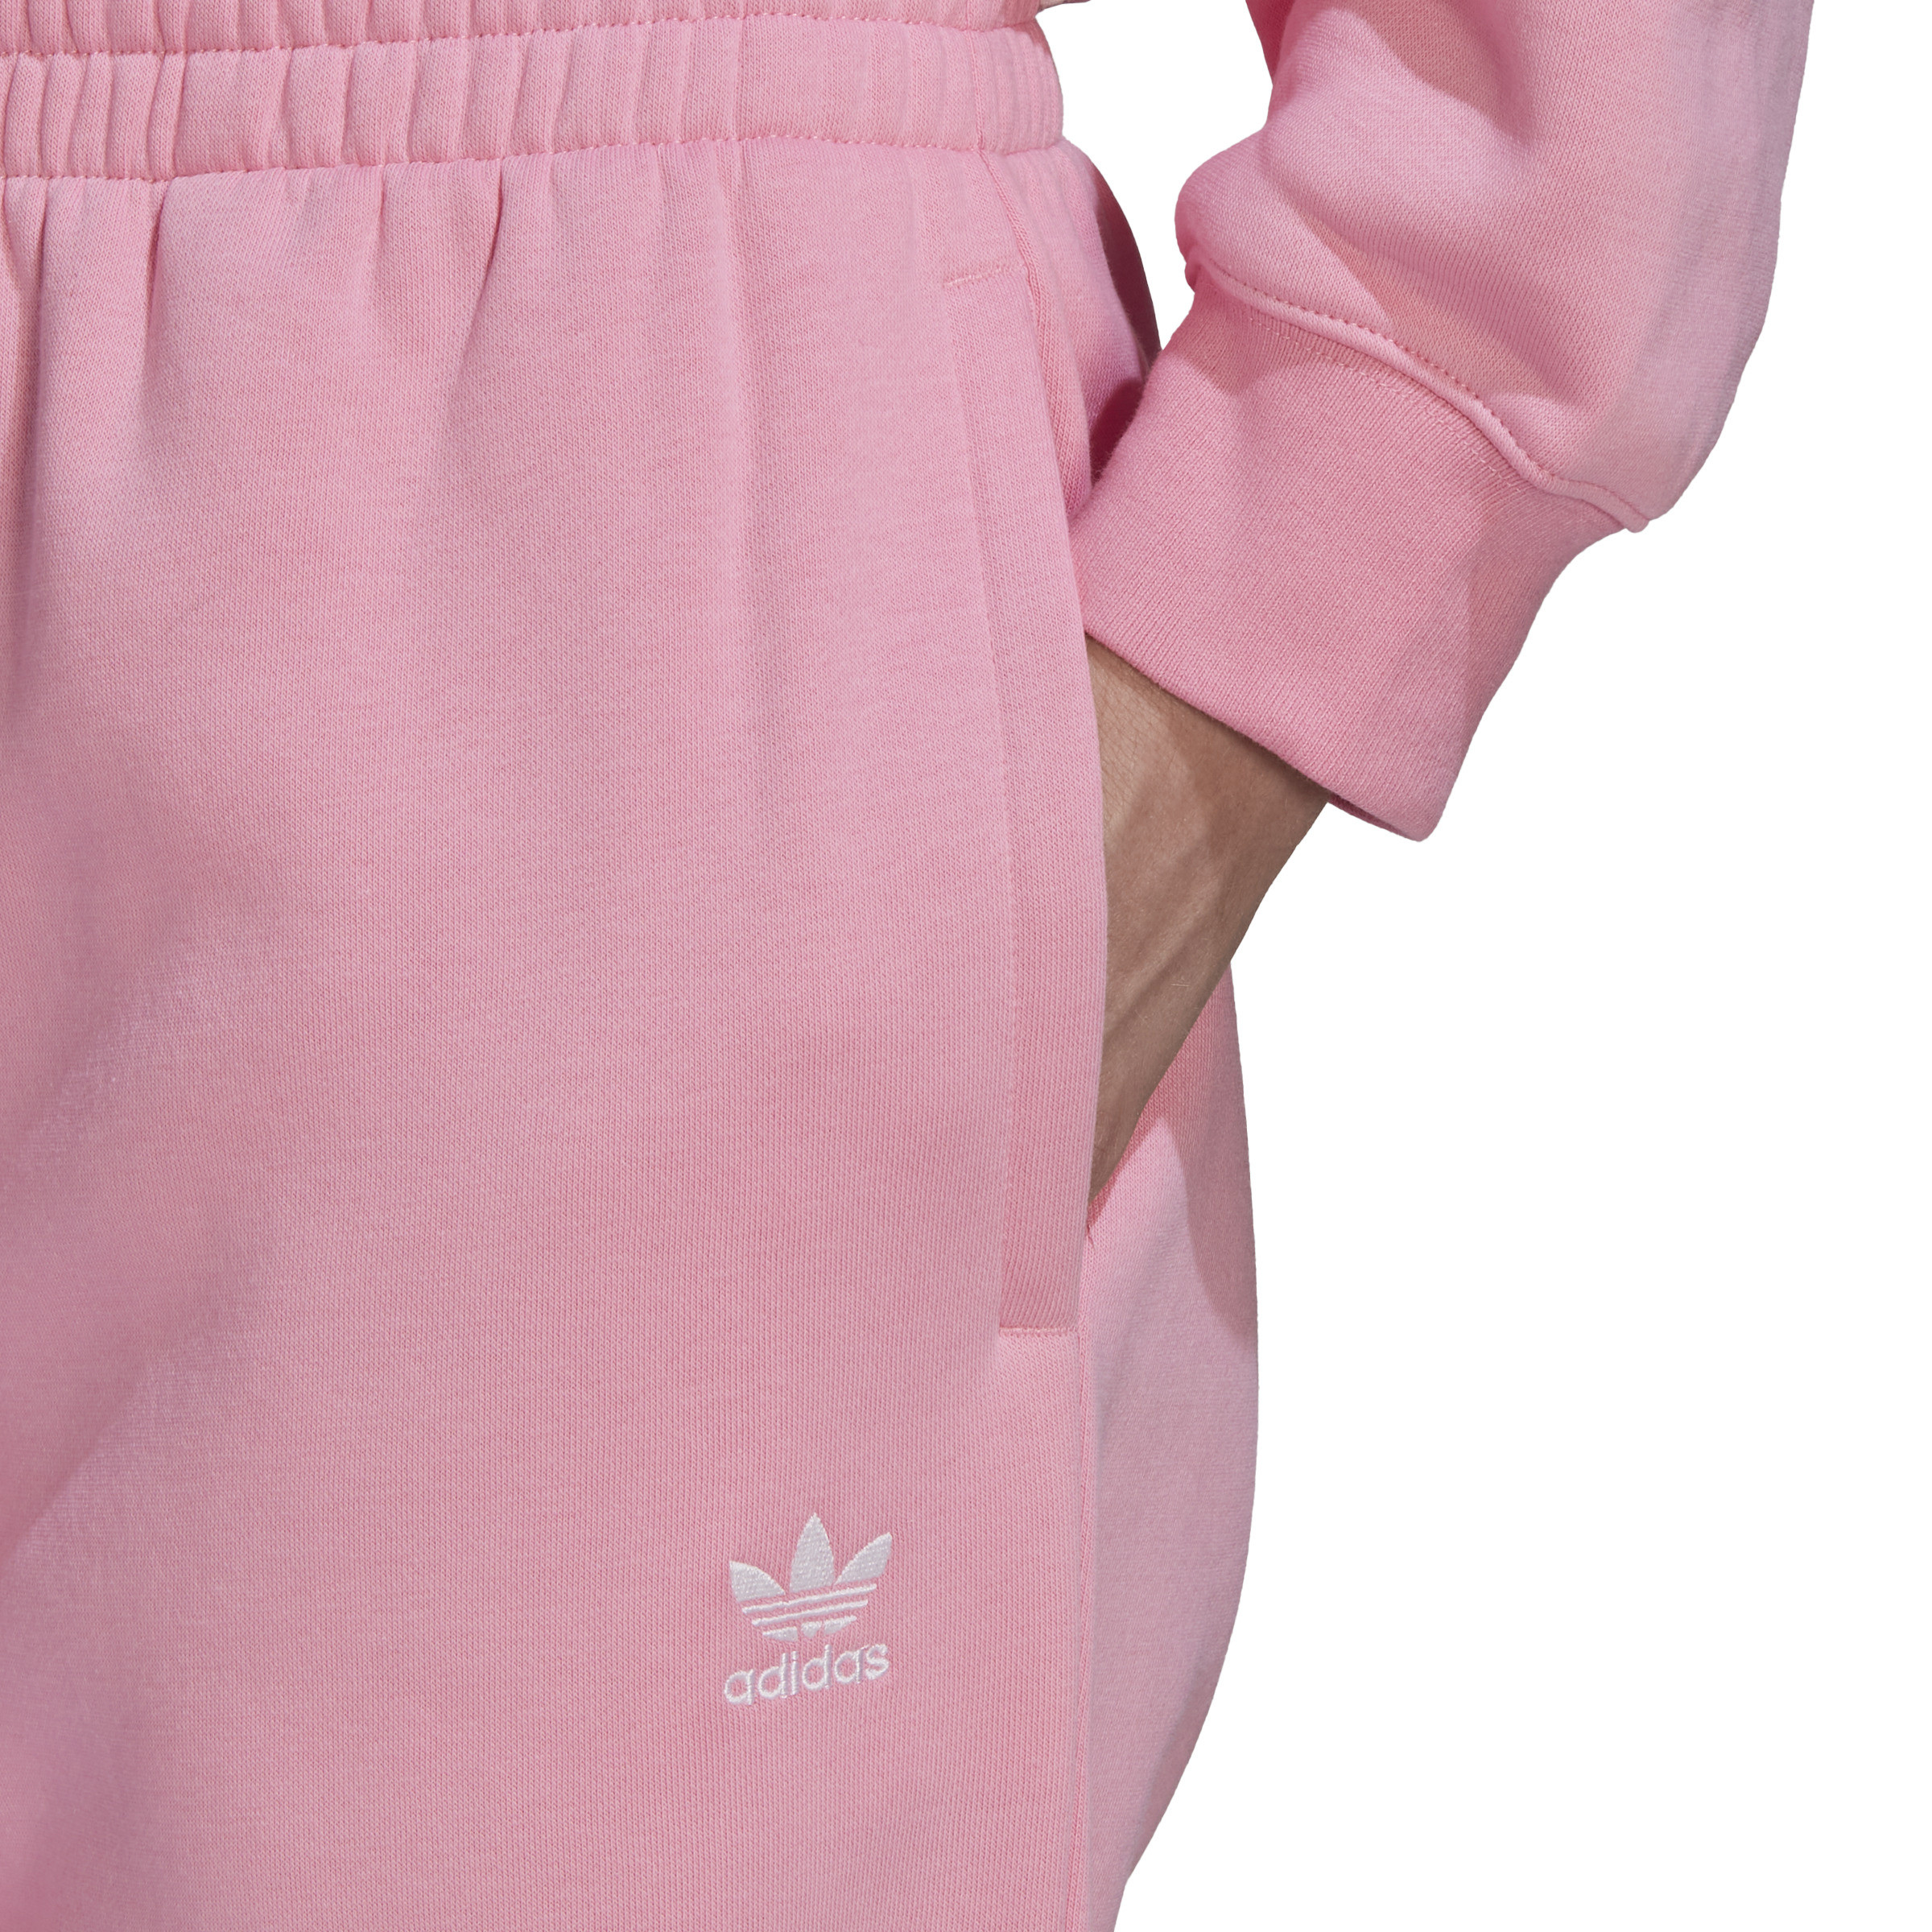 Adidas - Pantaloni adicolor essentials fleece joggers, Rosa, large image number 6